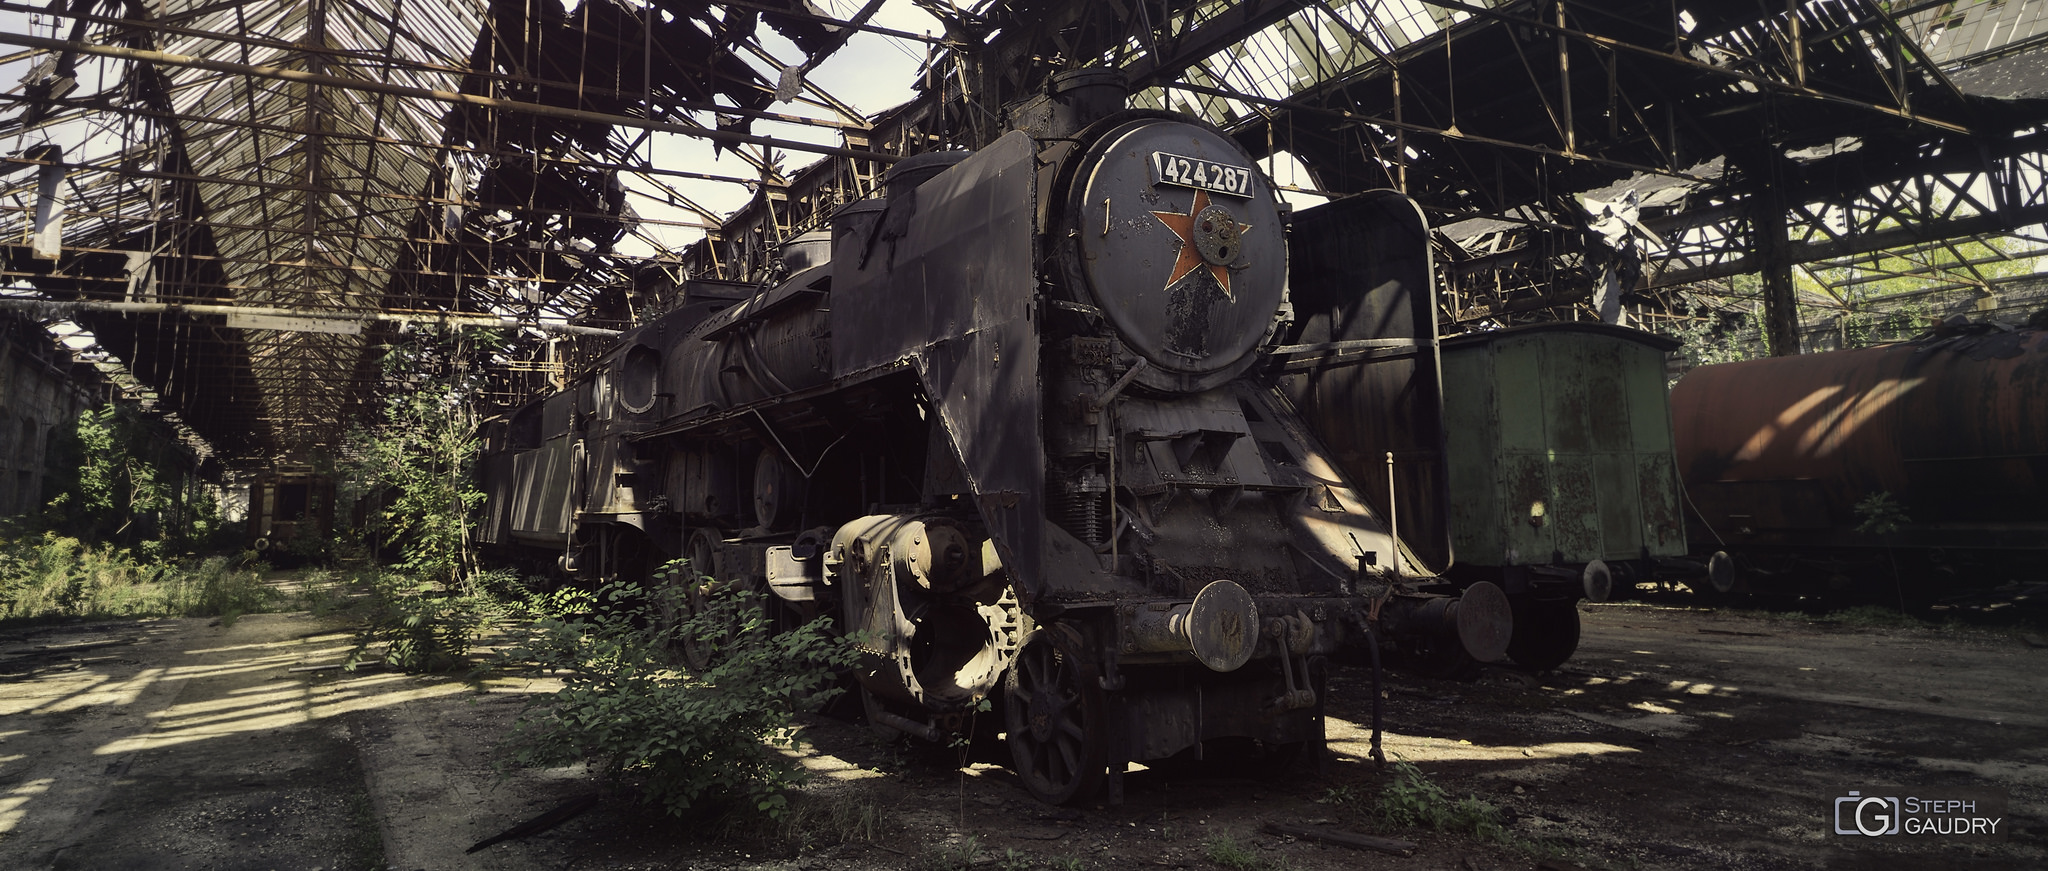 MÁV 424-287 (Abandoned Red star train) [Cliquez pour lancer le diaporama]